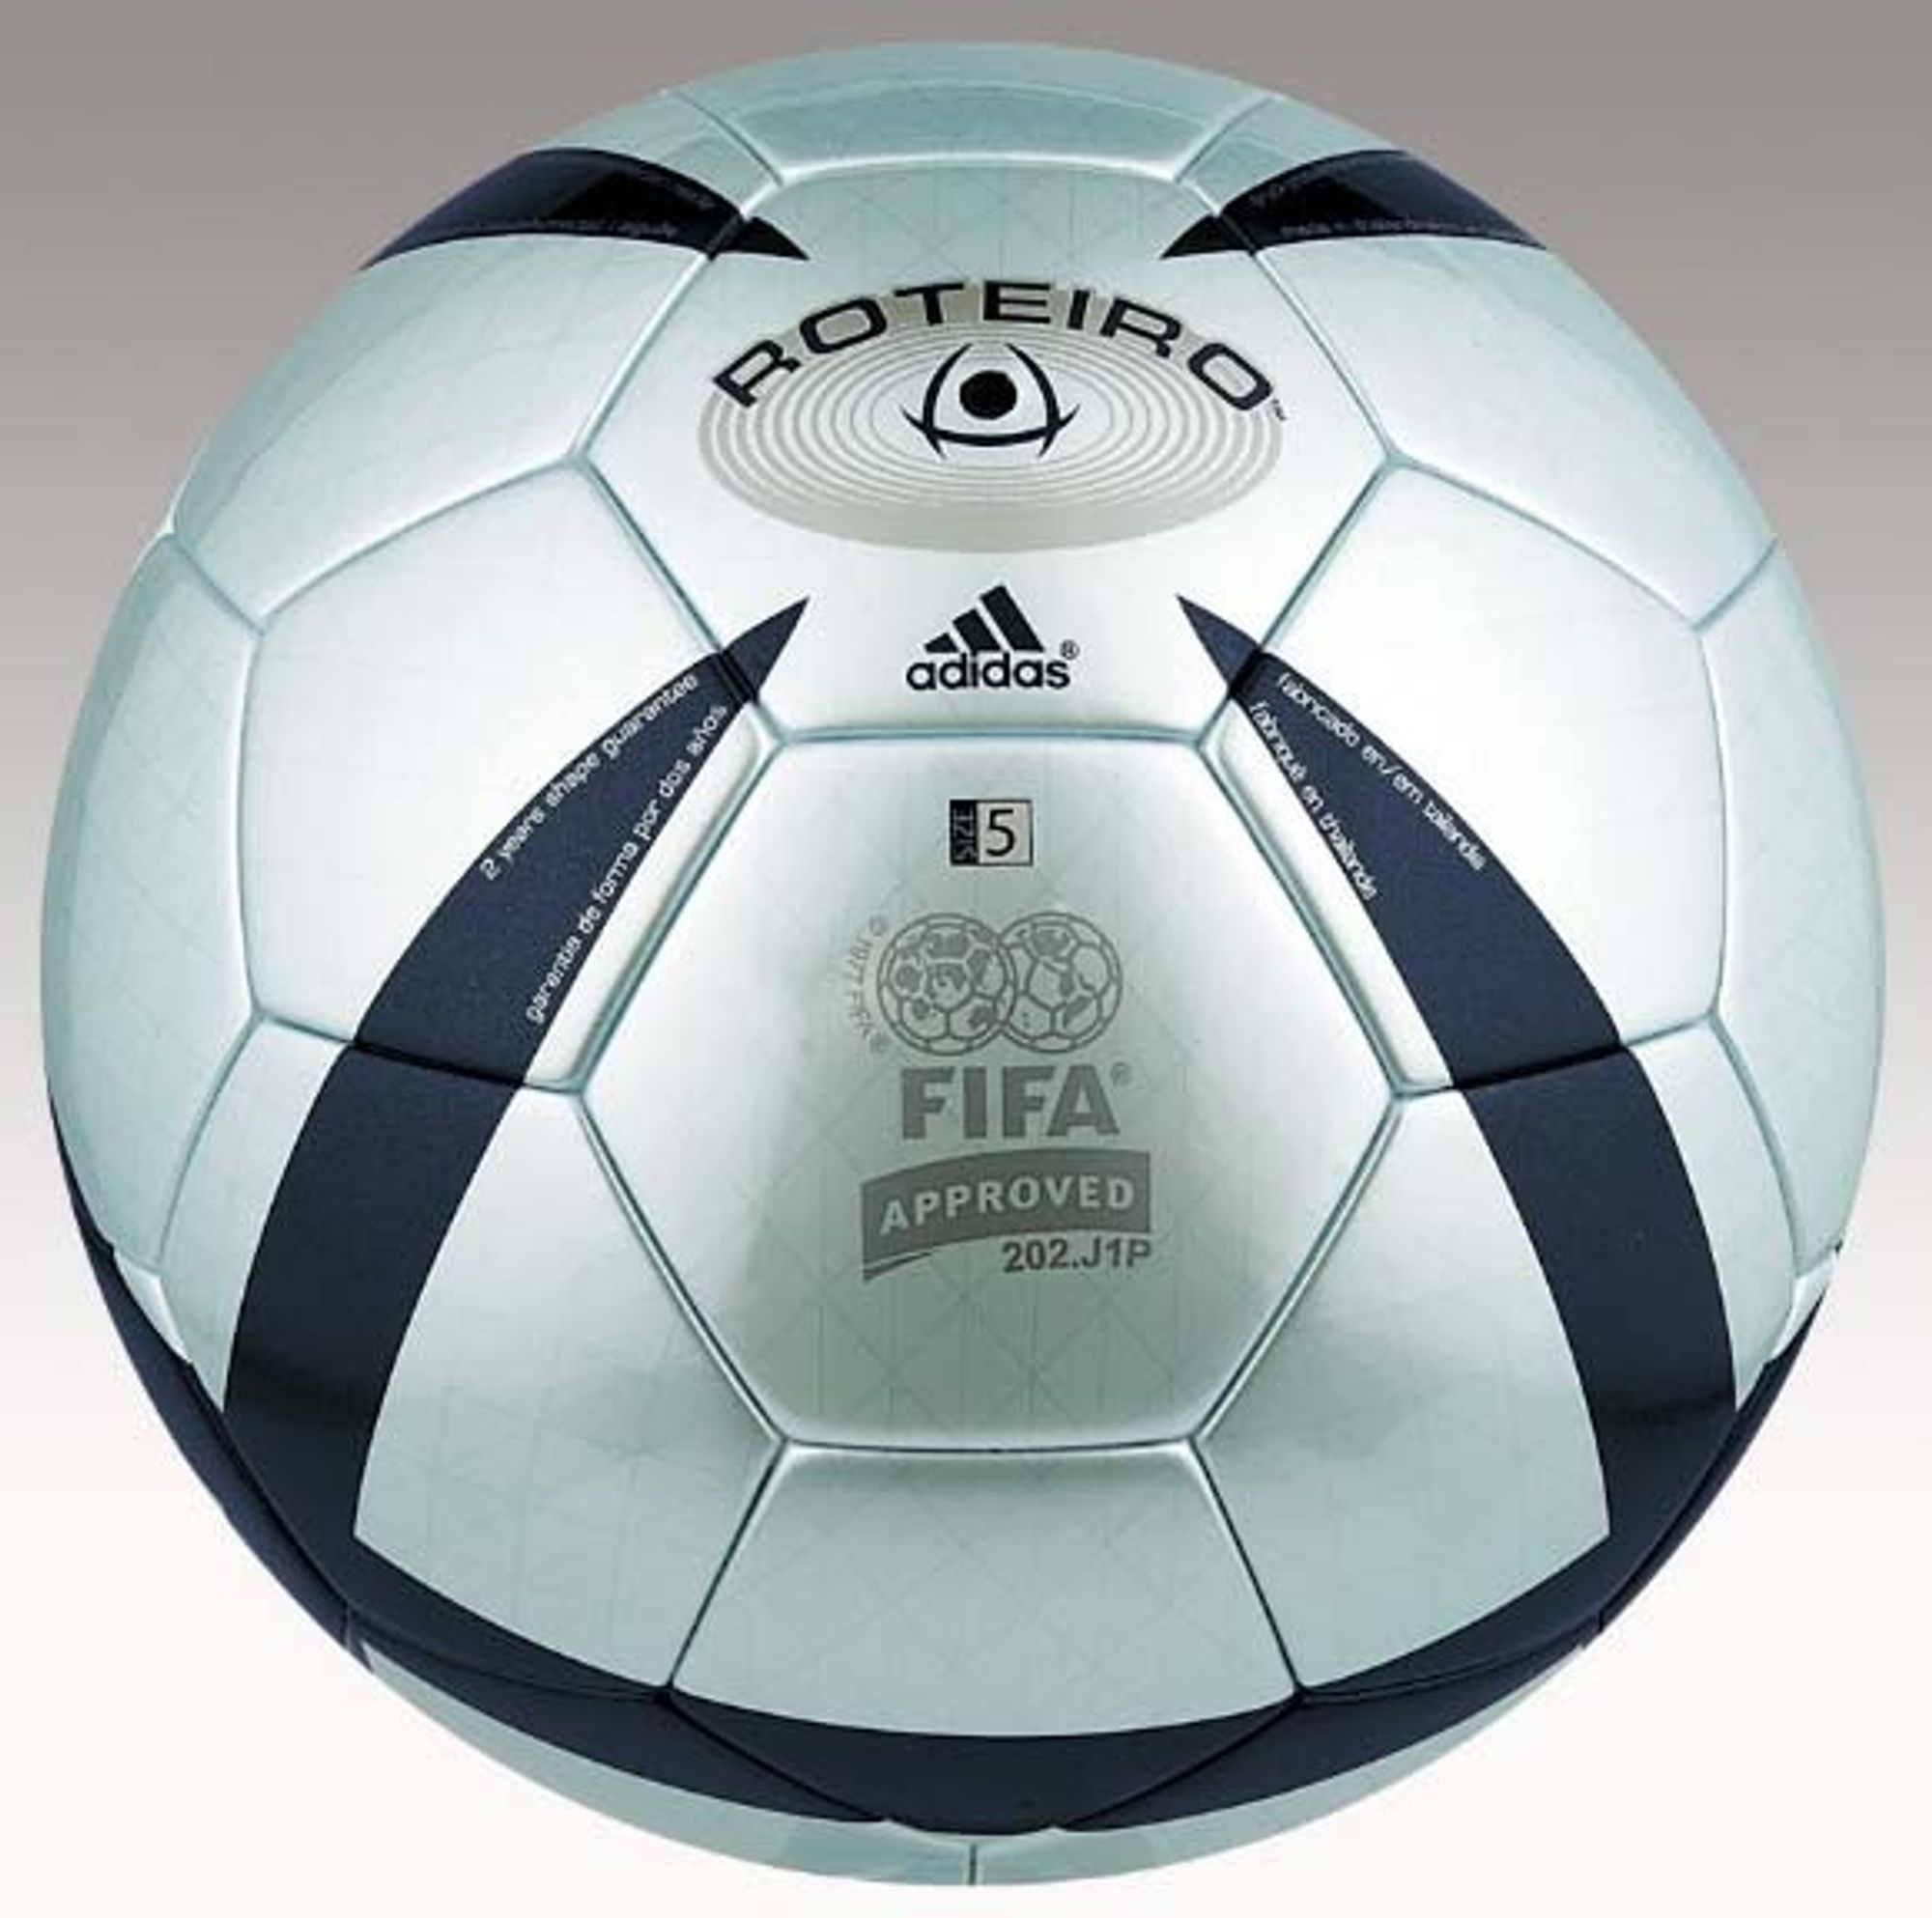 INGEN SMART BALL: Tyske Adidas skal også levere ballene til VM i år, men det blir den uintelligente typen som denne.